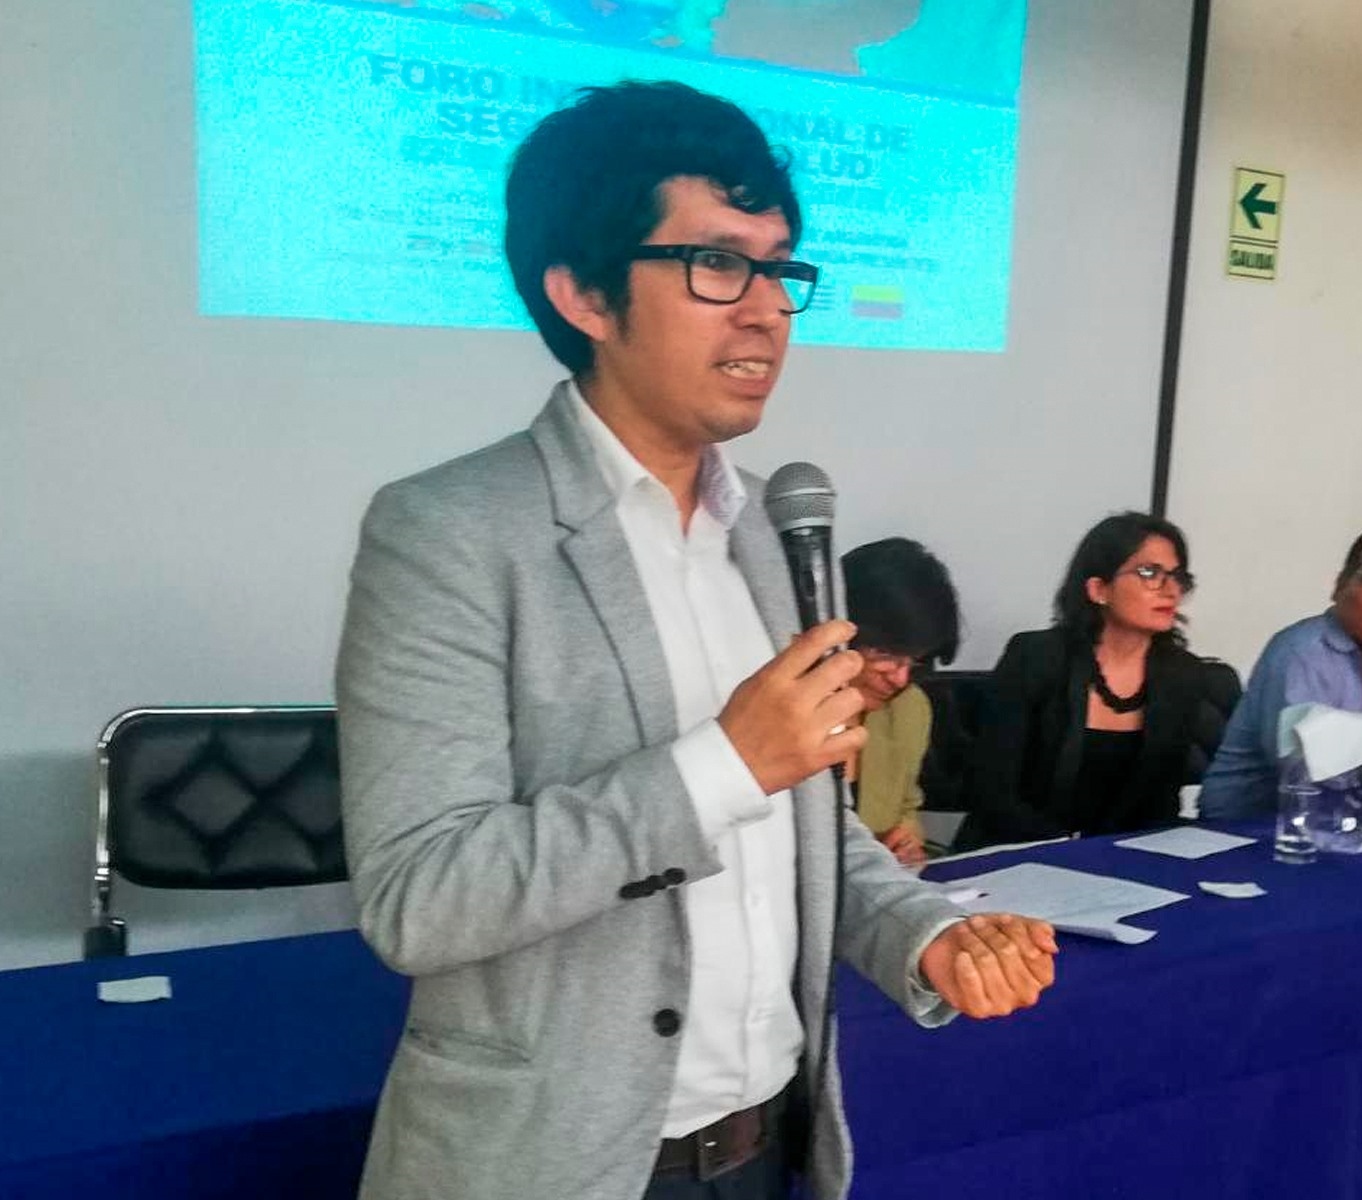 R. Alexis Roncal, nombrado Director Ejecutivo en el Instituto Nacional de Salud de Perú